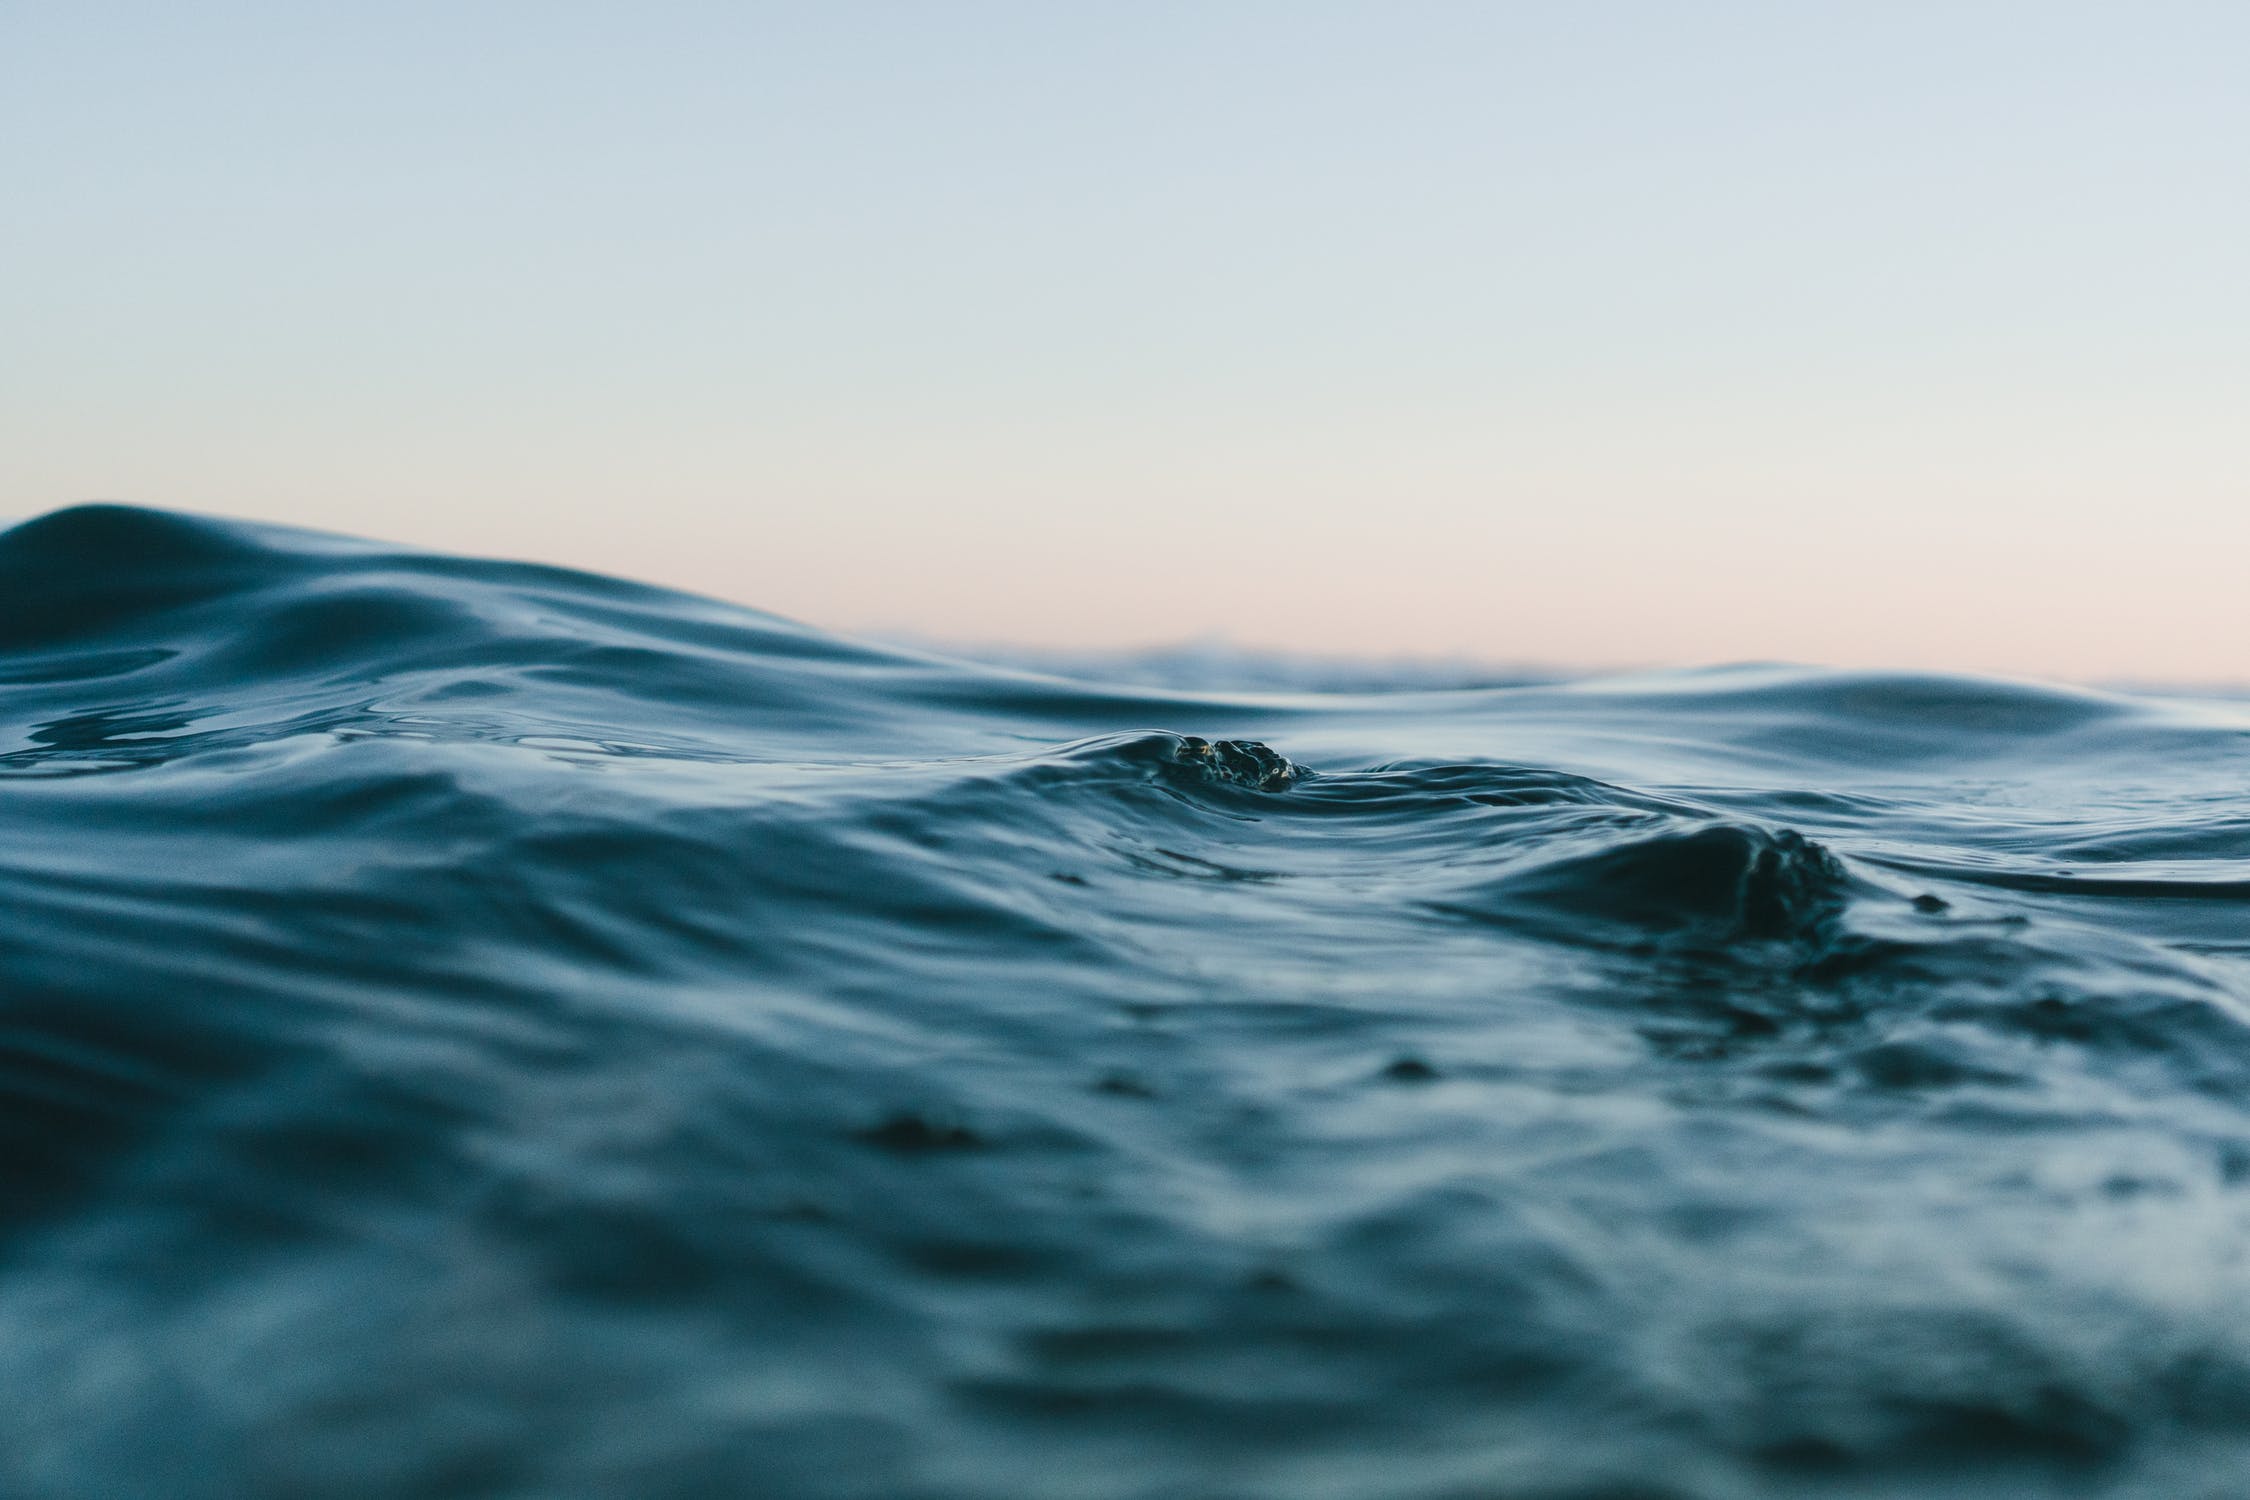 ทำไมทะเล ถึงช่วยเยียวยาจิตใจของมนุษย์ได้